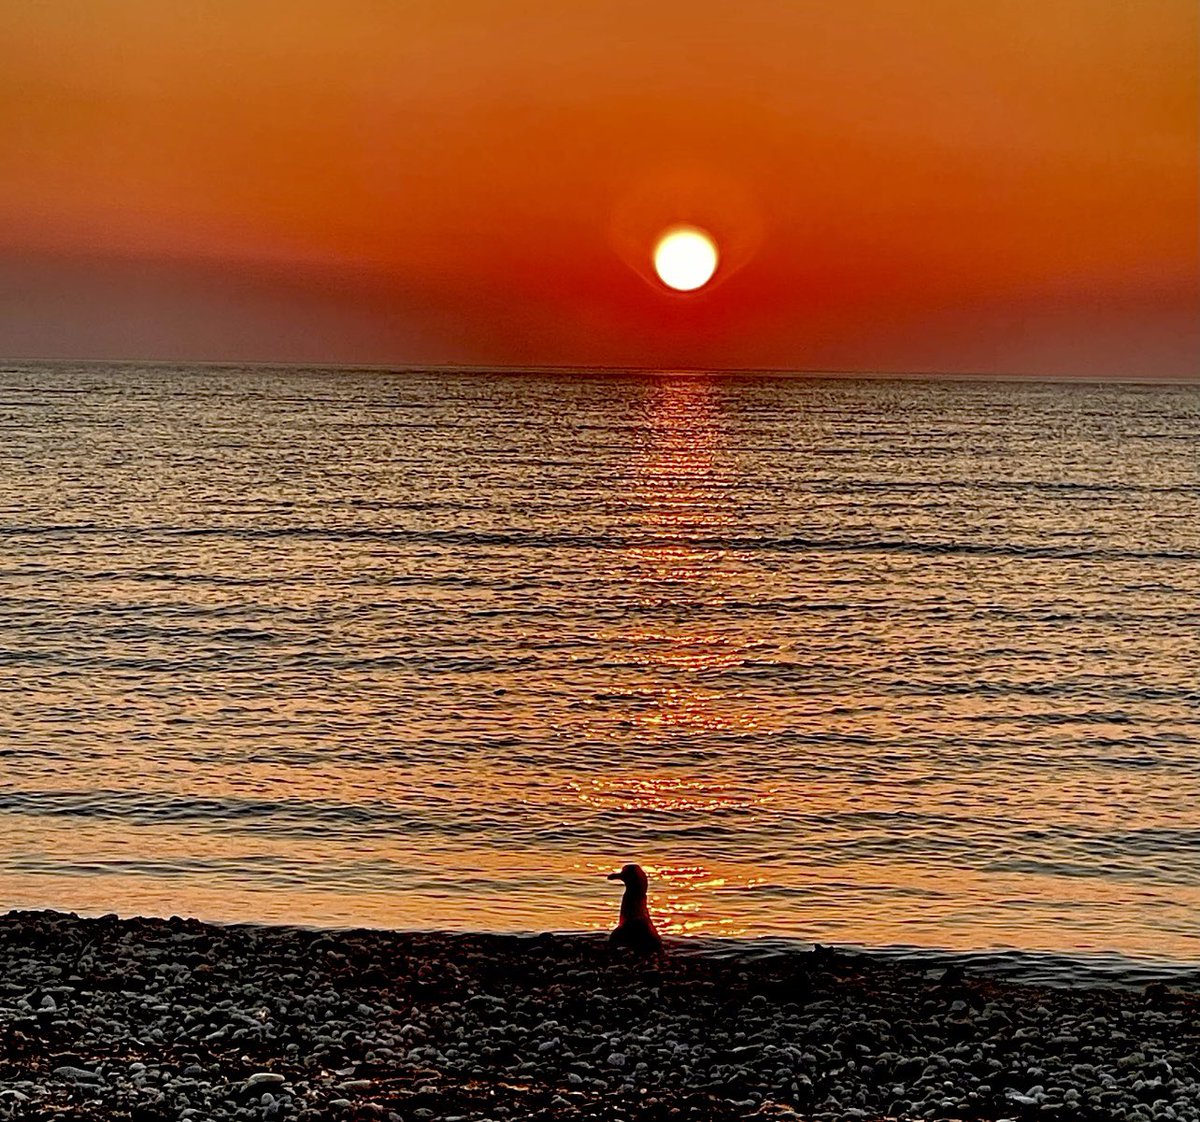 Seagull enjoying a beautiful sunset 🌅